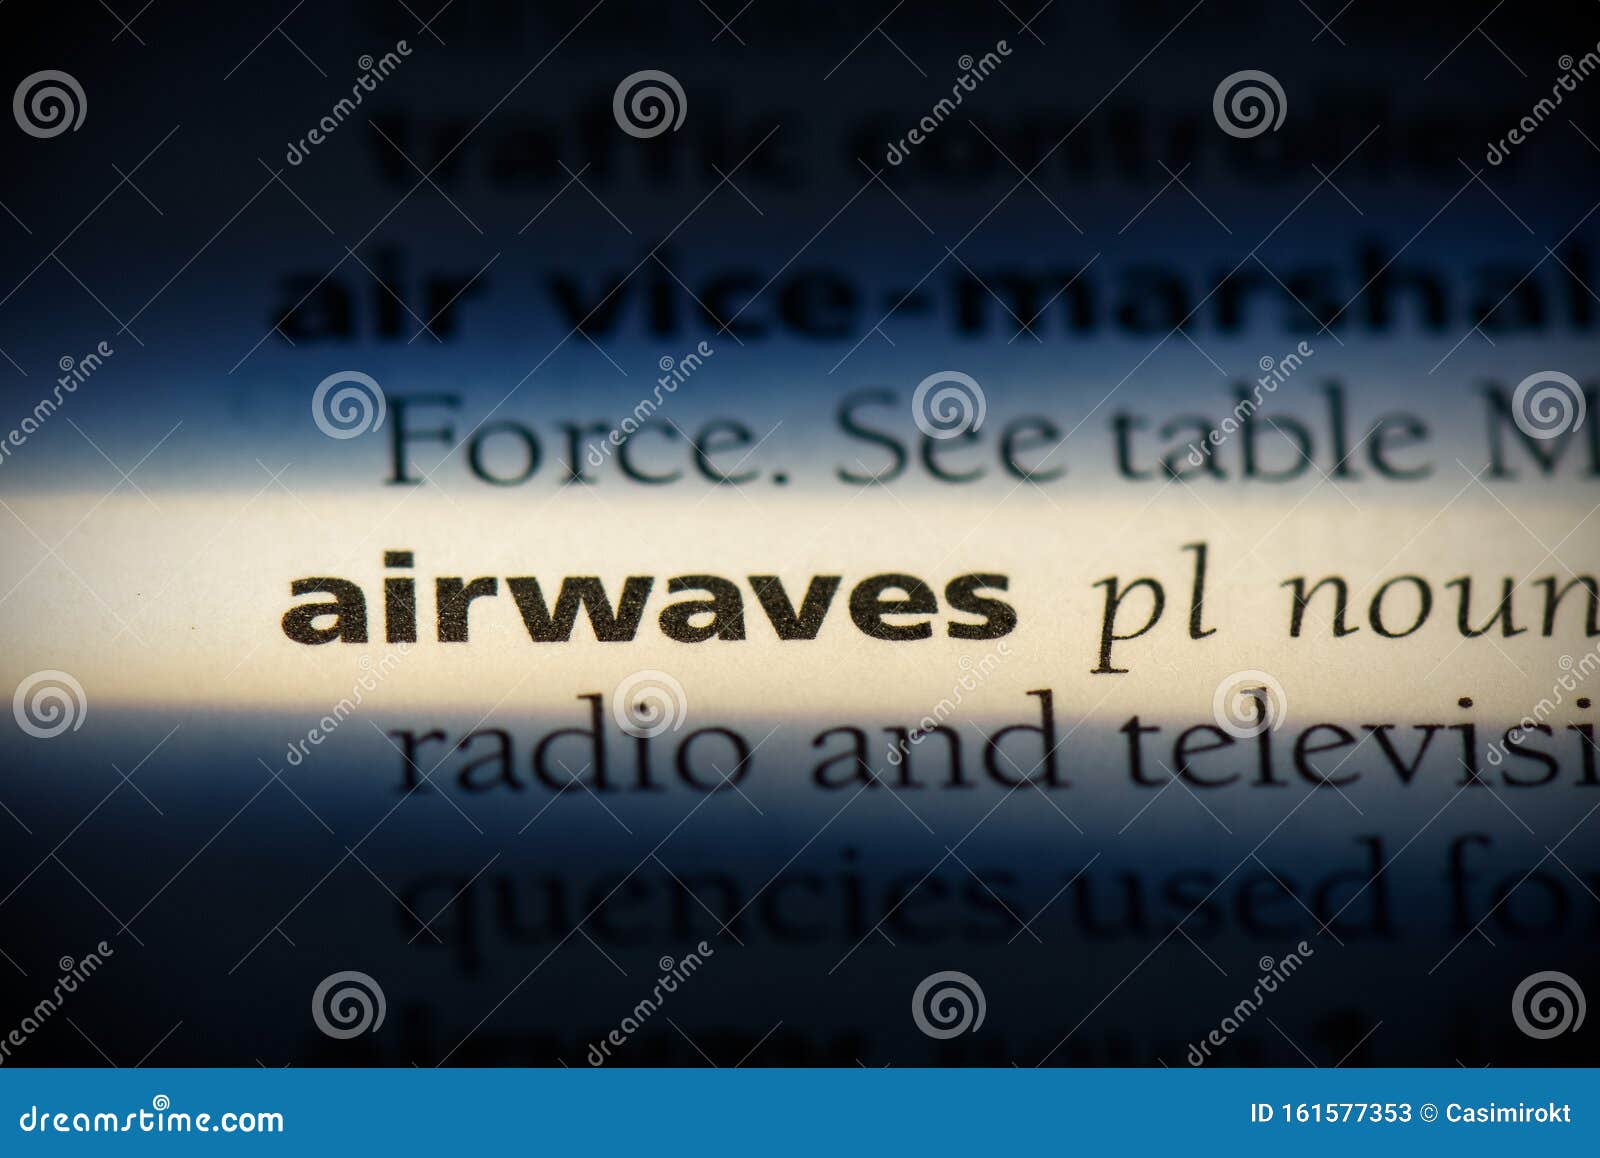 airwaves